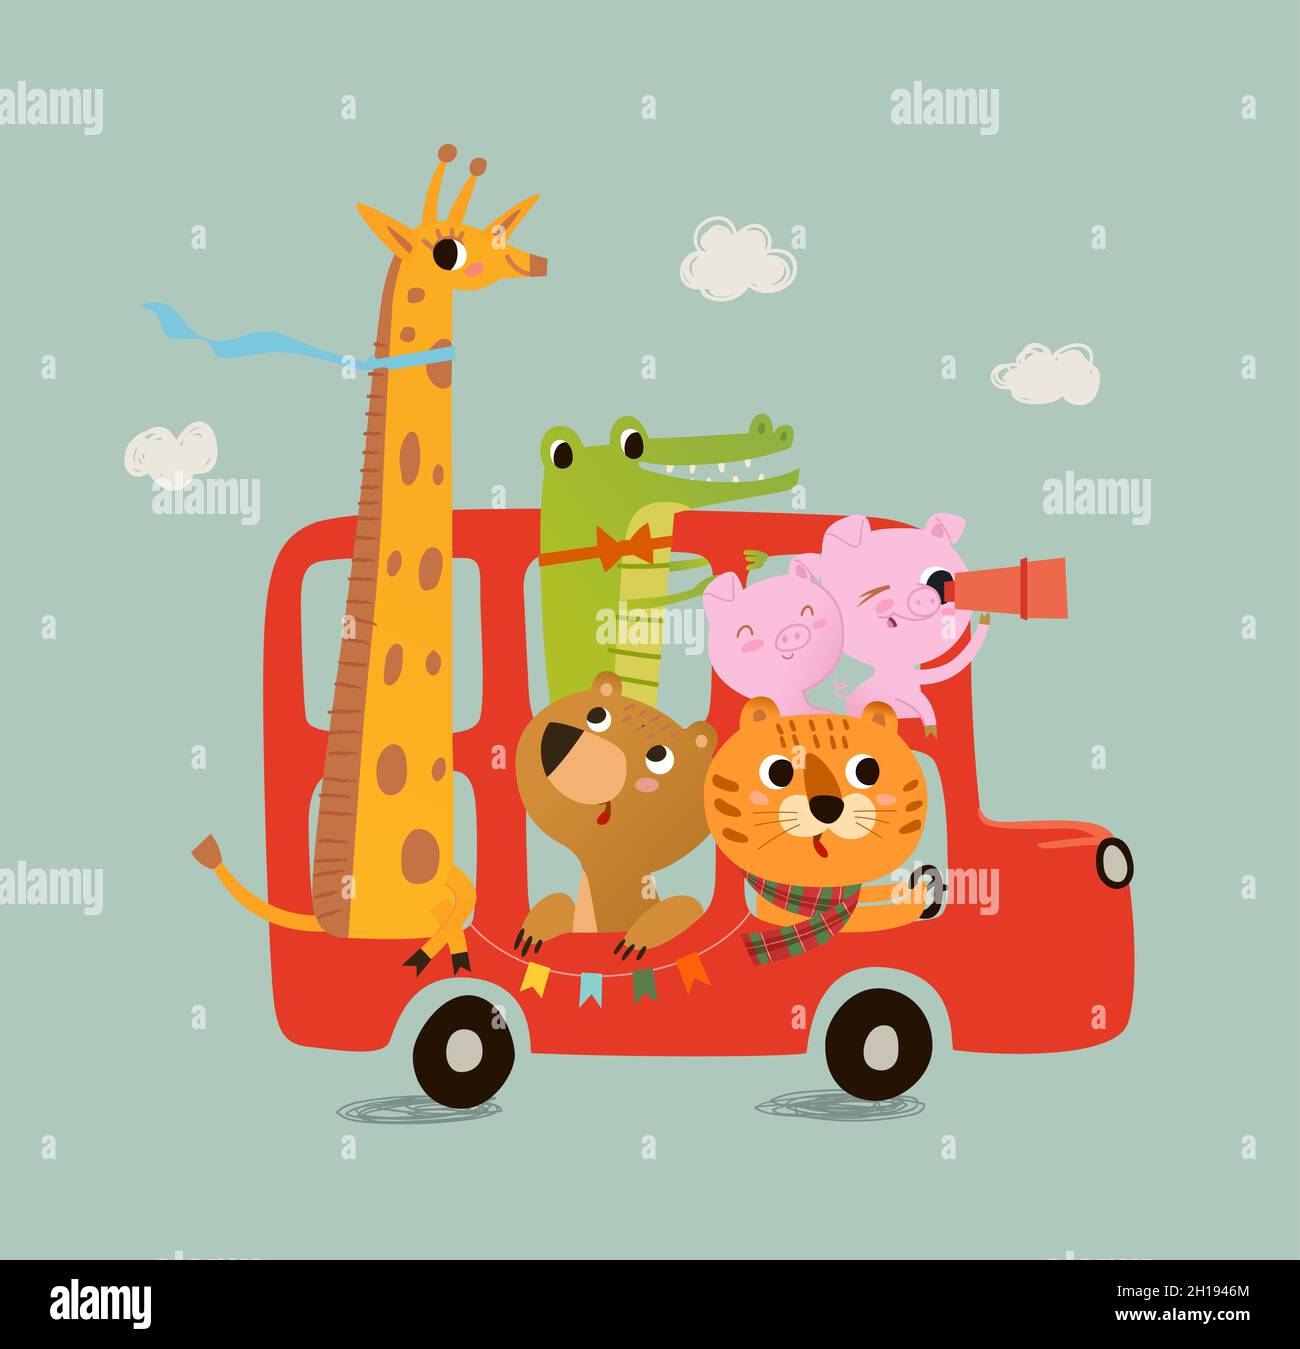 Joli bus londonien avec des animaux dans des tons pastel.Lion cub, cochons. Crocodile, girafe, ours.Illustration vectorielle pour nouveau-né.Illustration avec mignon Illustration de Vecteur